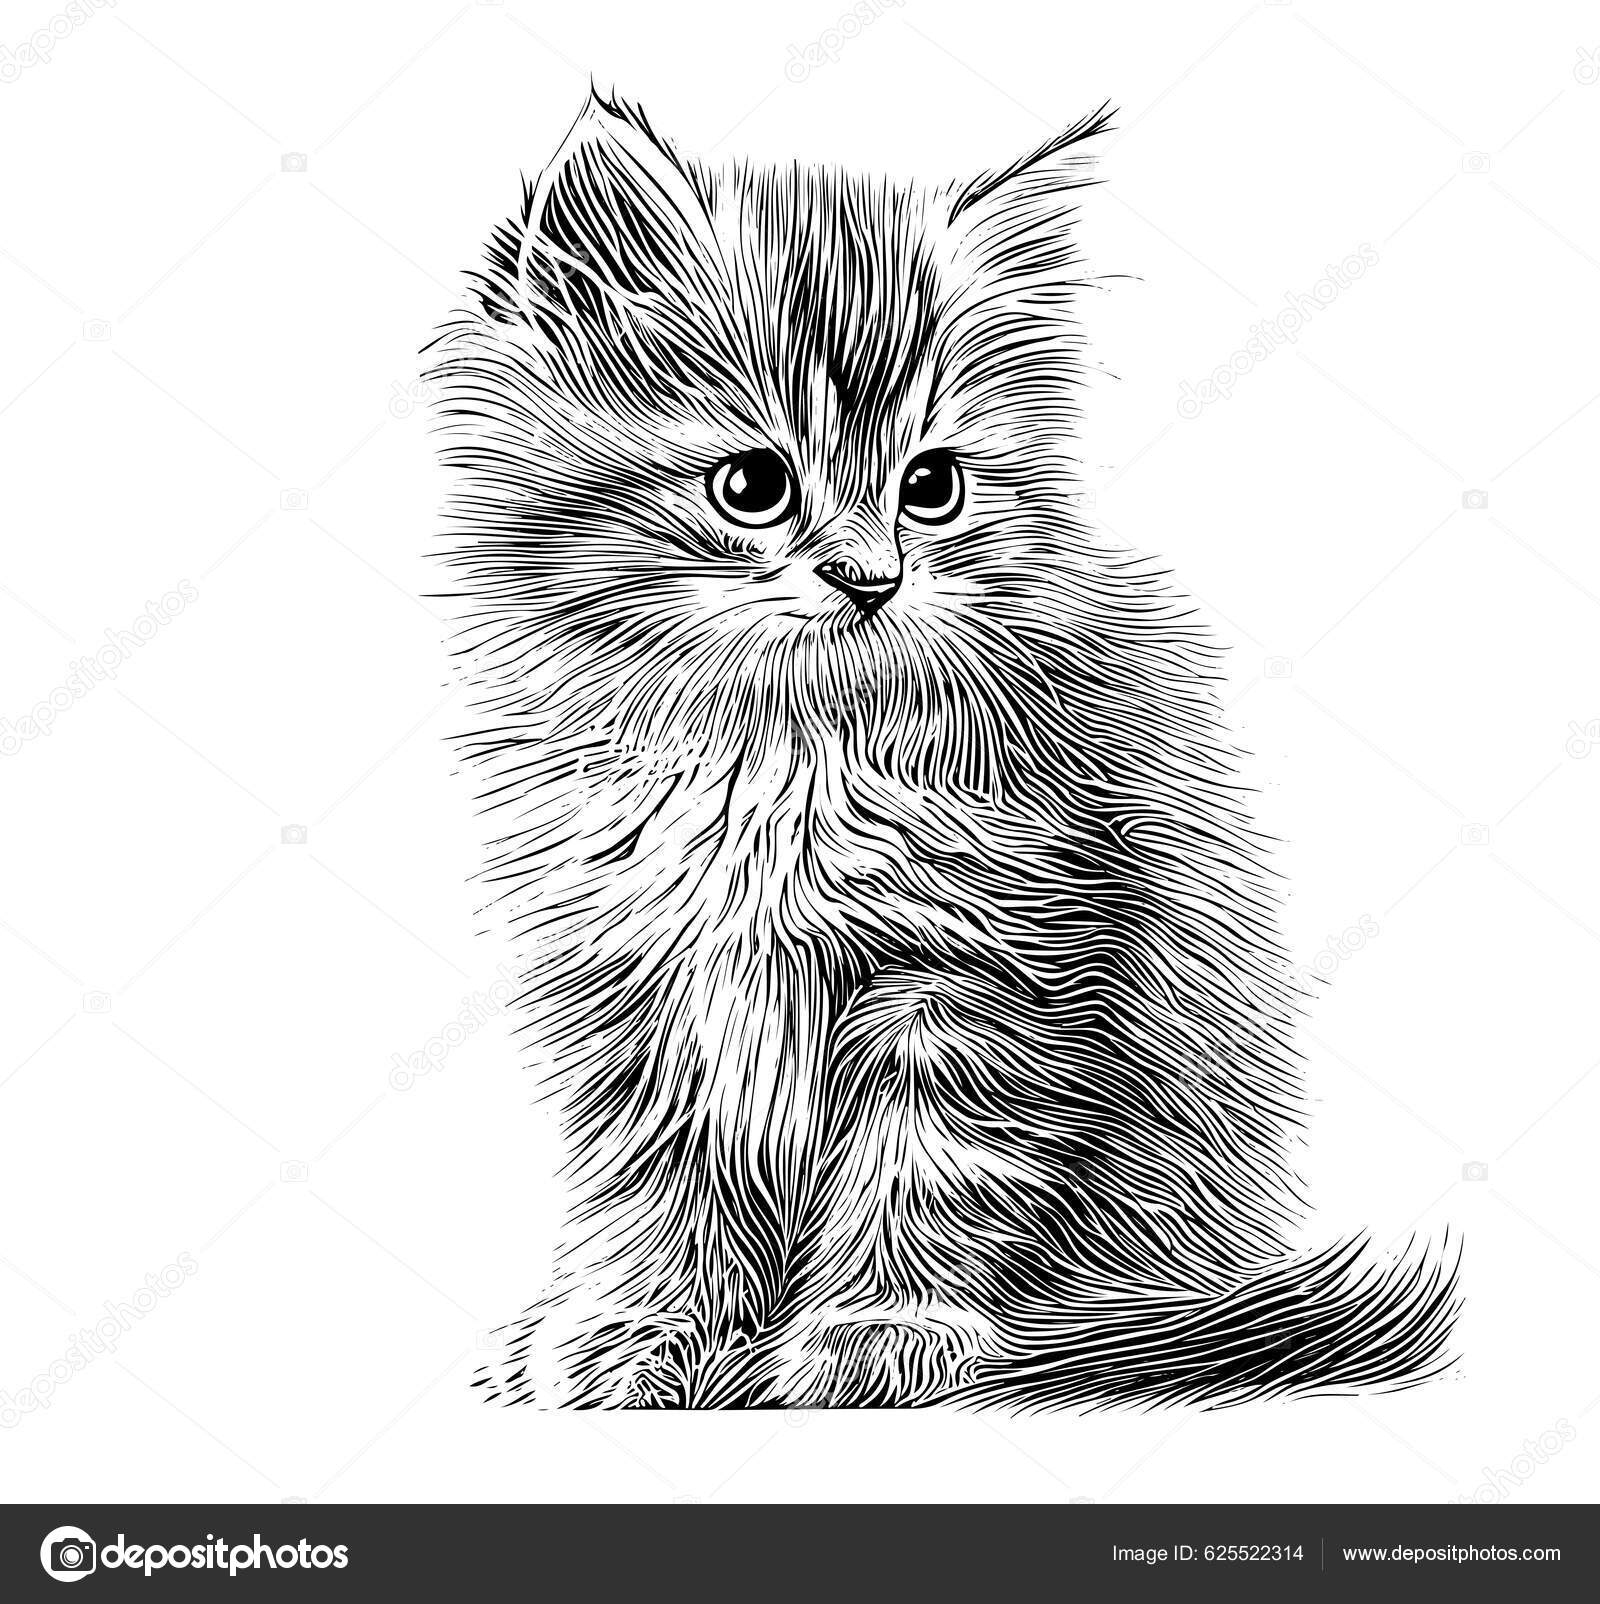 Kotek Siedzi Sylwetka - Darmowa grafika wektorowa na Pixabay